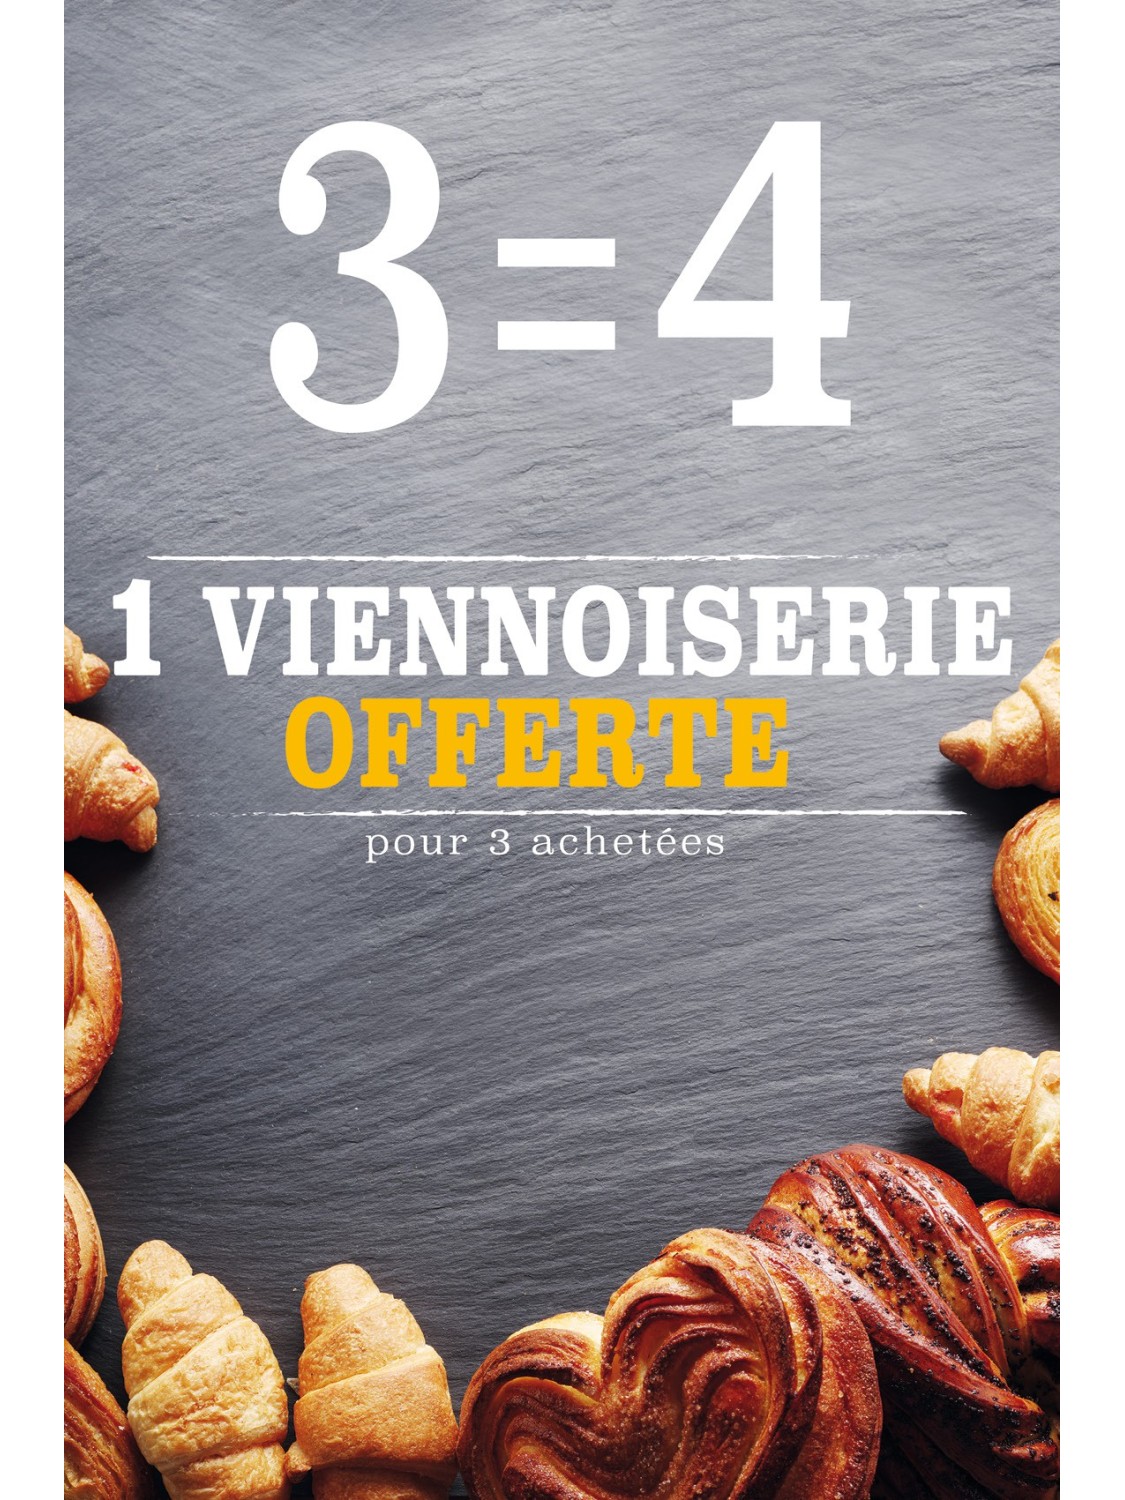 Affiche Boulangerie "3 égal 4 viennoiseries"